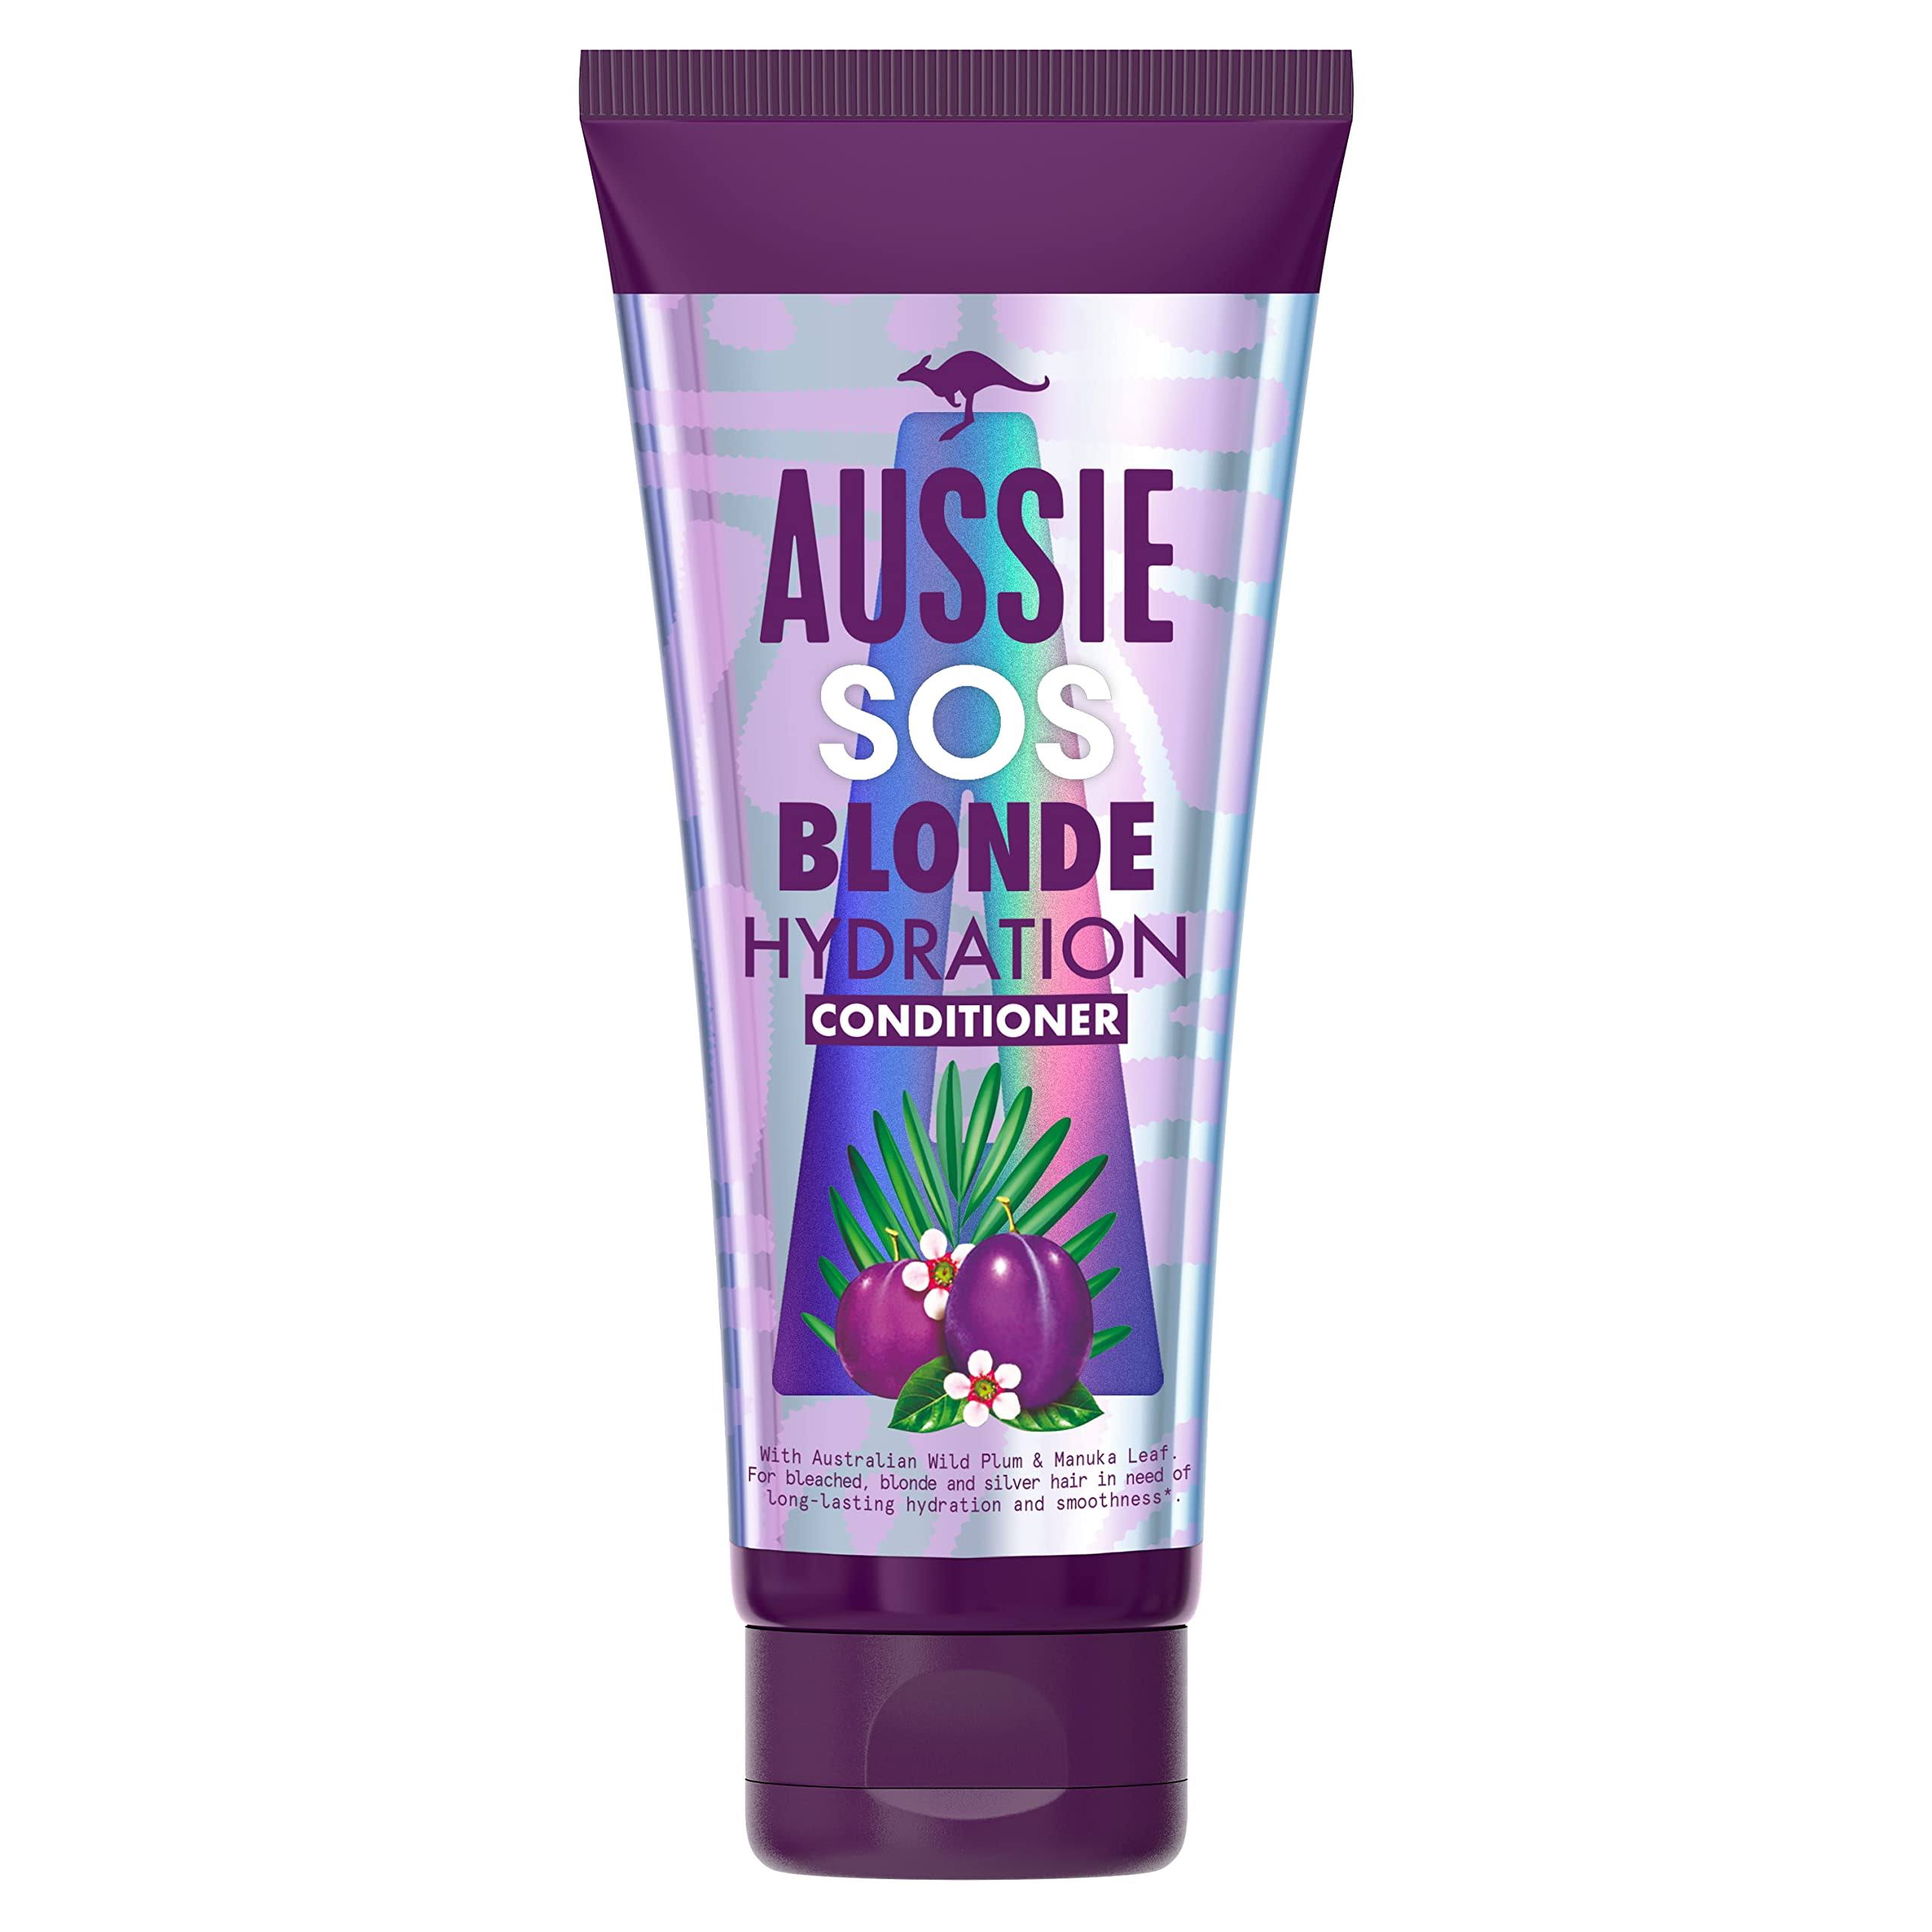 Aussie Blonde Hydration Conditioner, Purple, 200ml